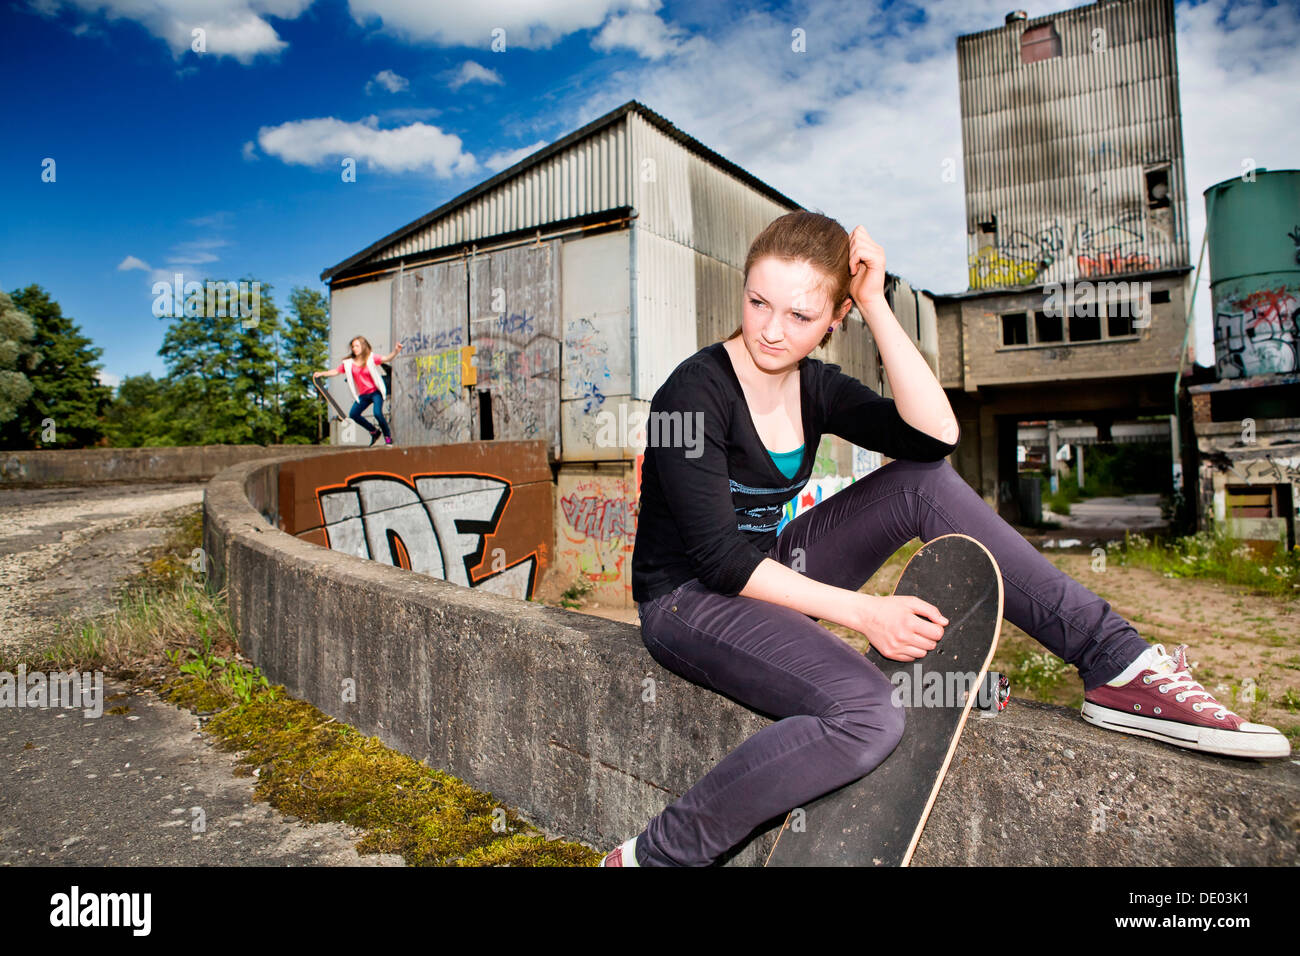 Porträt eines jungen Mädchens mit einem Skateboard sitzt in einem städtischen Gebiet Stockfoto